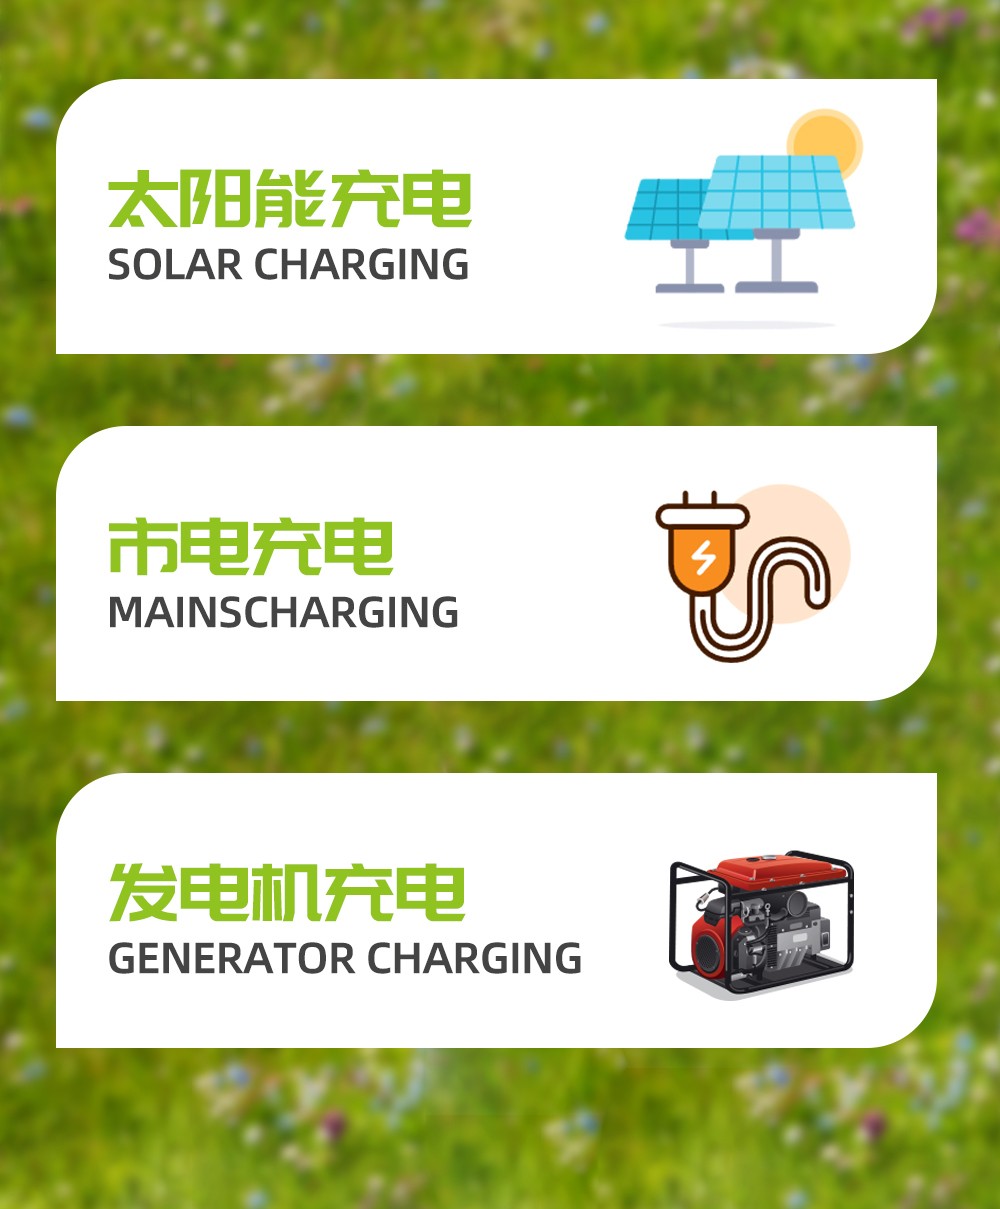 新葡萄新京B500-4 20度电堆叠式太阳能家庭储能电源_10